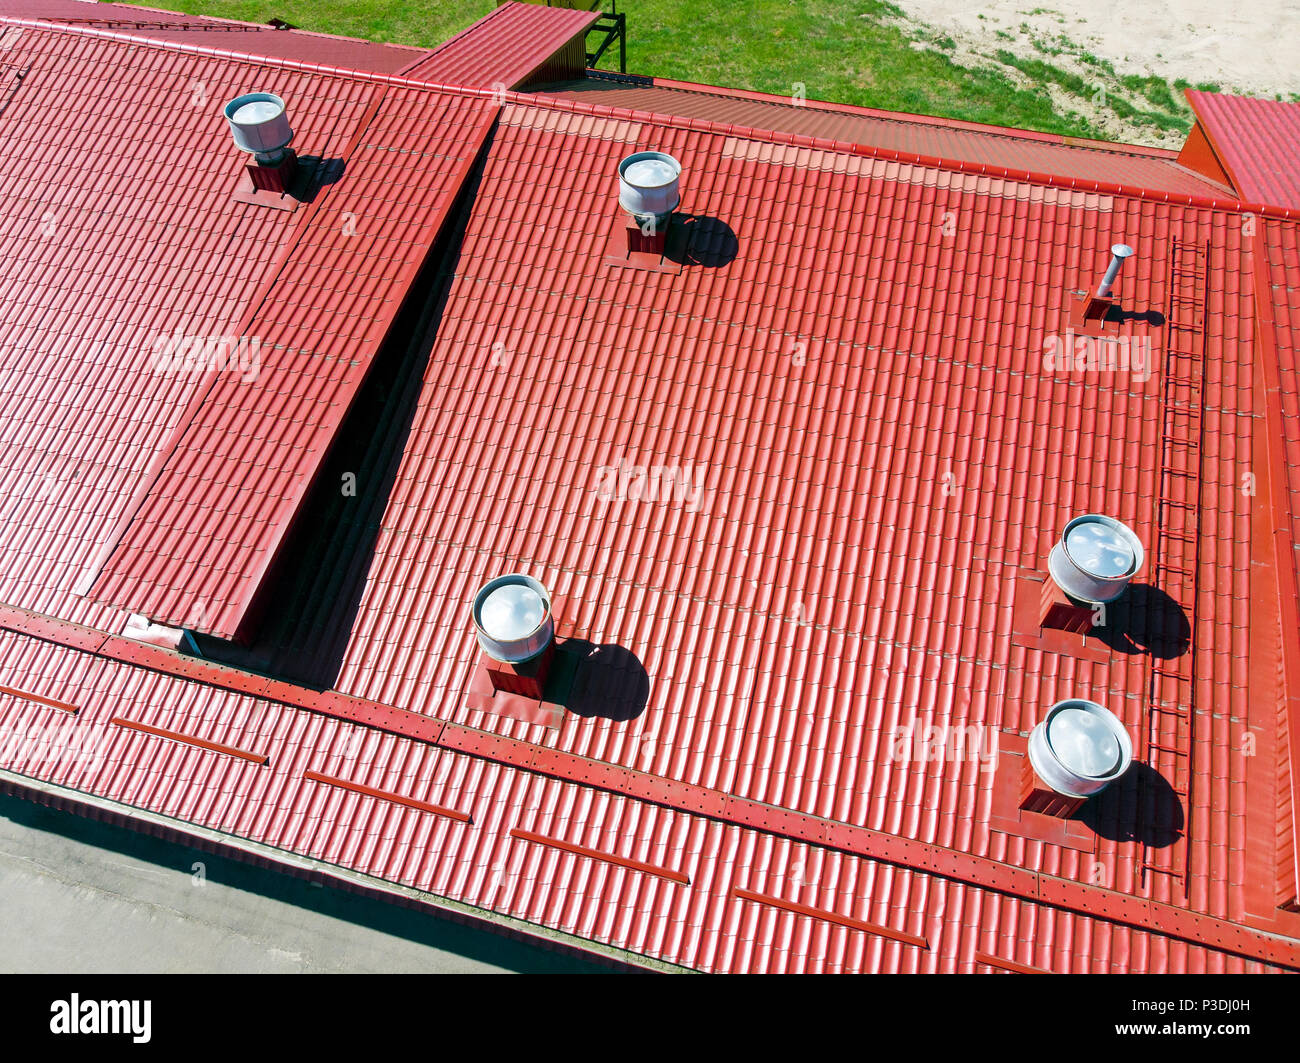 Nuevo almacén de metal rojo con techo instalado tuberías de fotografía aérea de sistemas de ventilación. Foto de stock